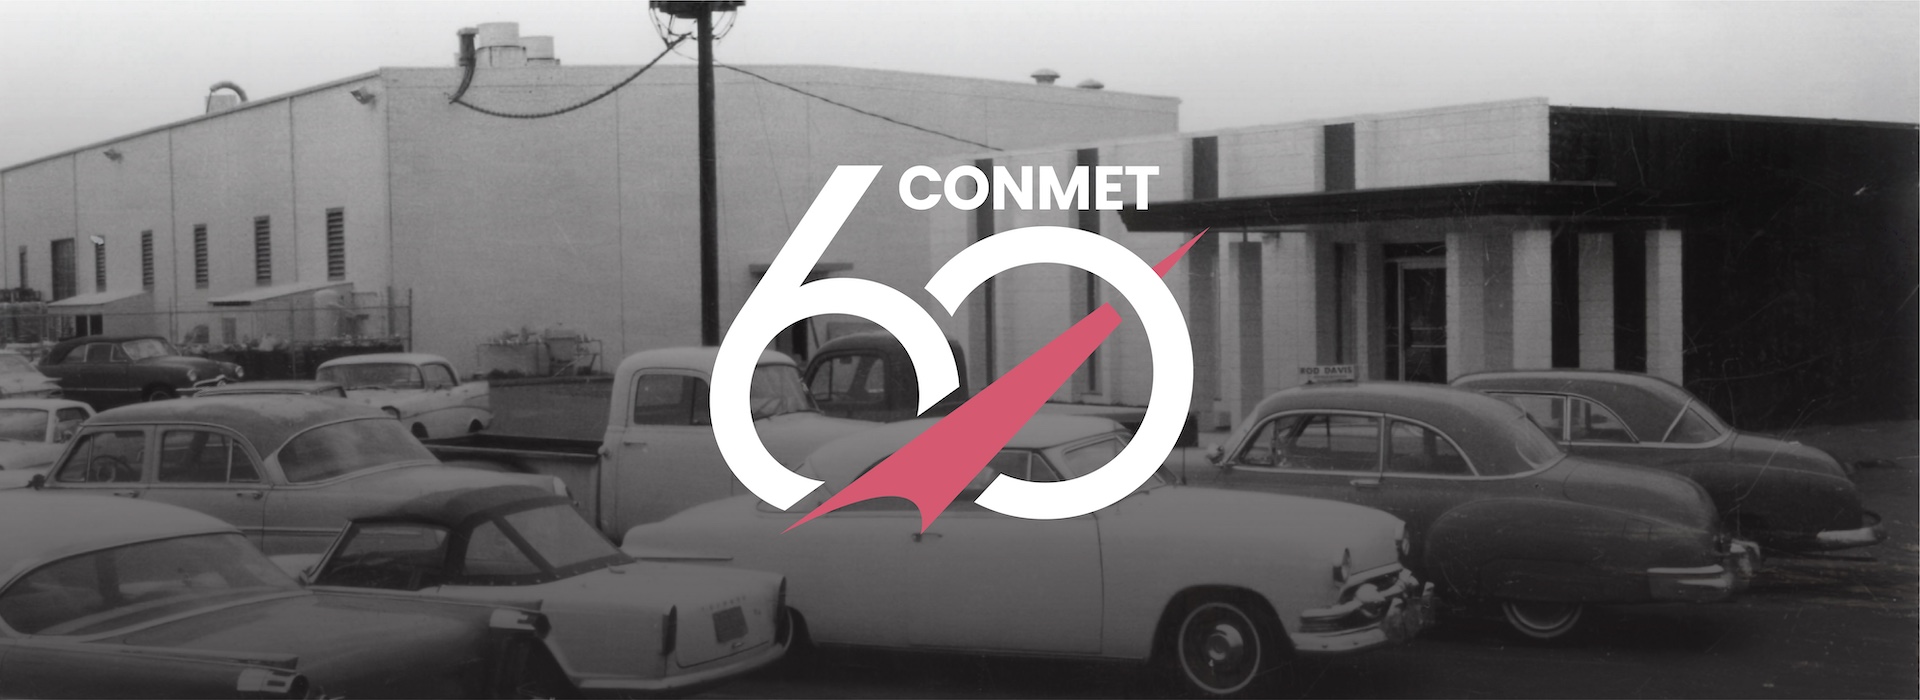 ConMet celebra 60 años de innovación y liderazgo en la industria